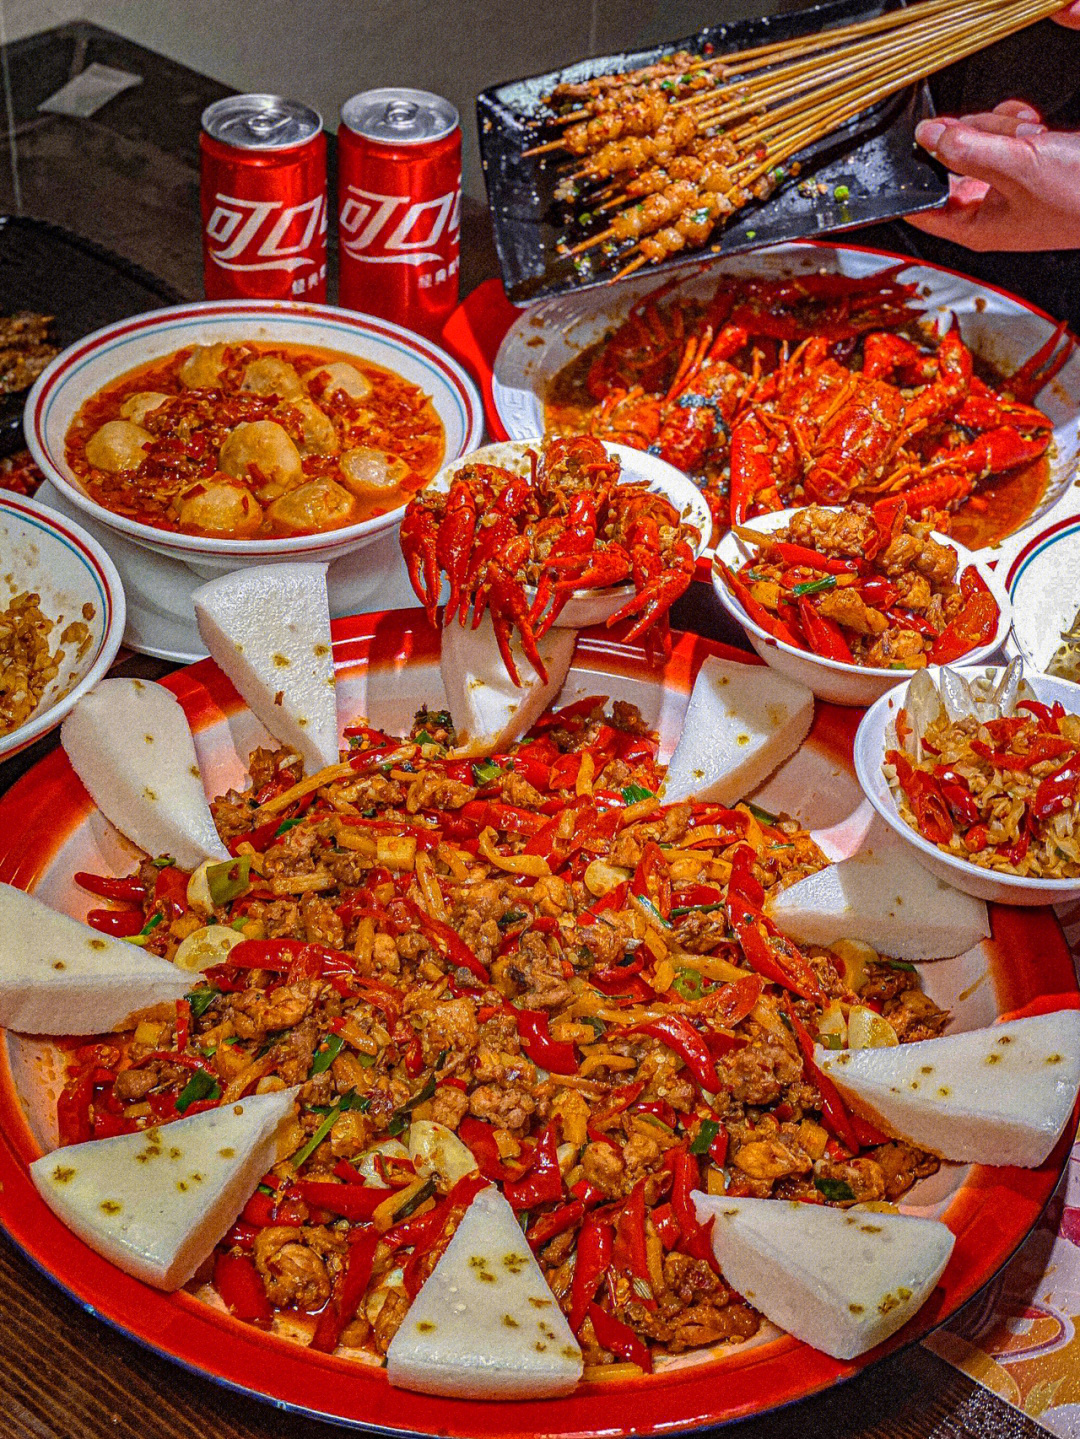 深圳美食排行榜图片